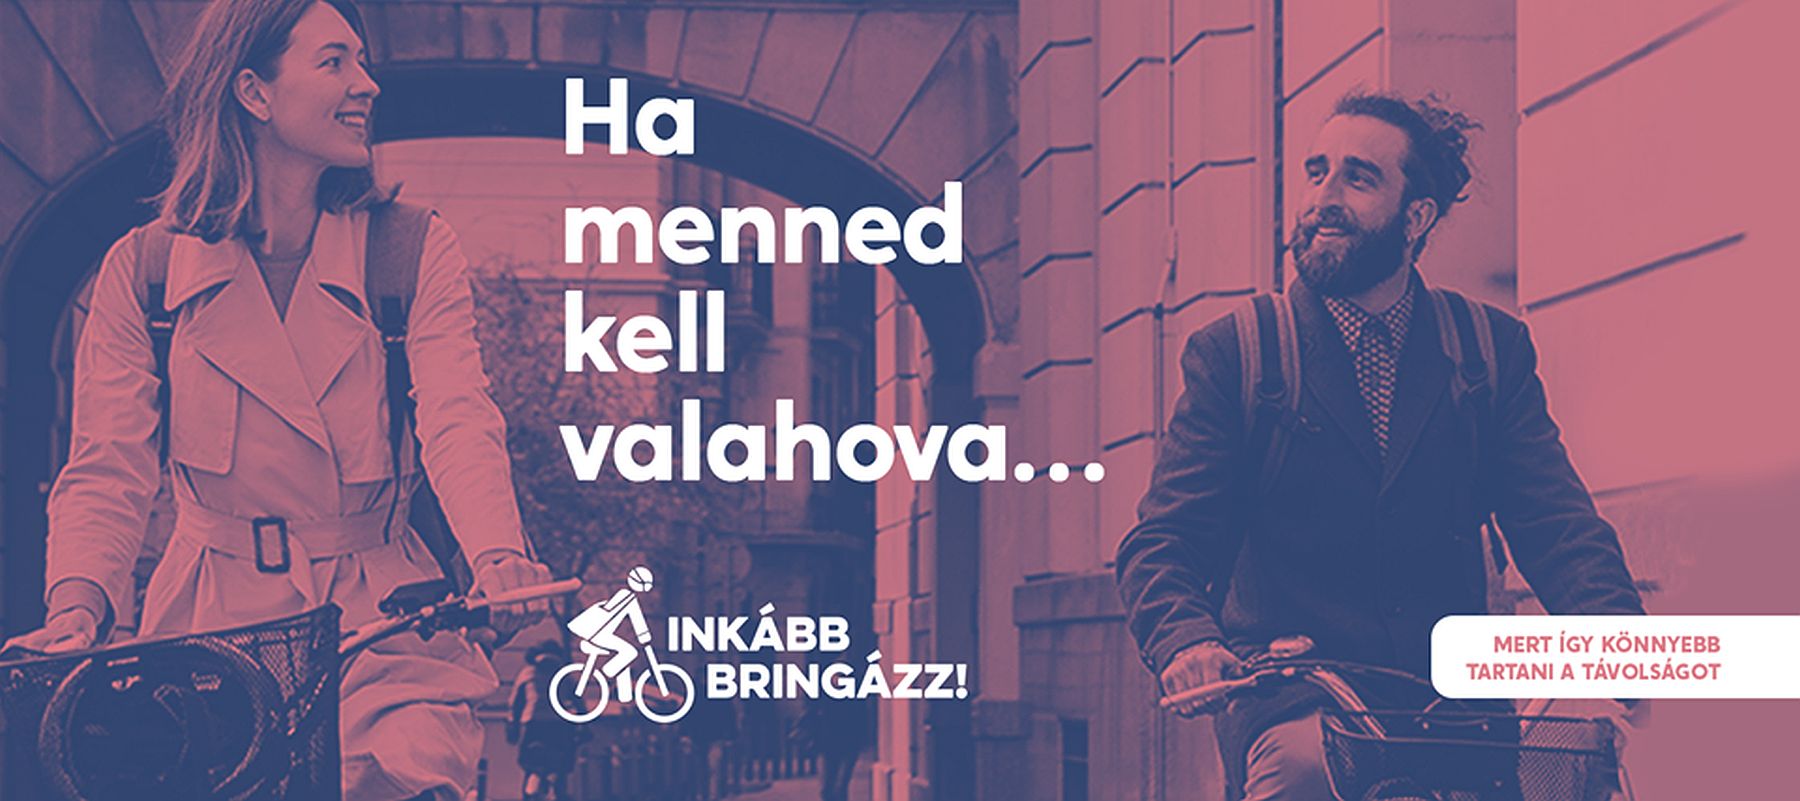 Inkább bringázz! - rendhagyó kampány indult a kerékpározás népszerűsítésére